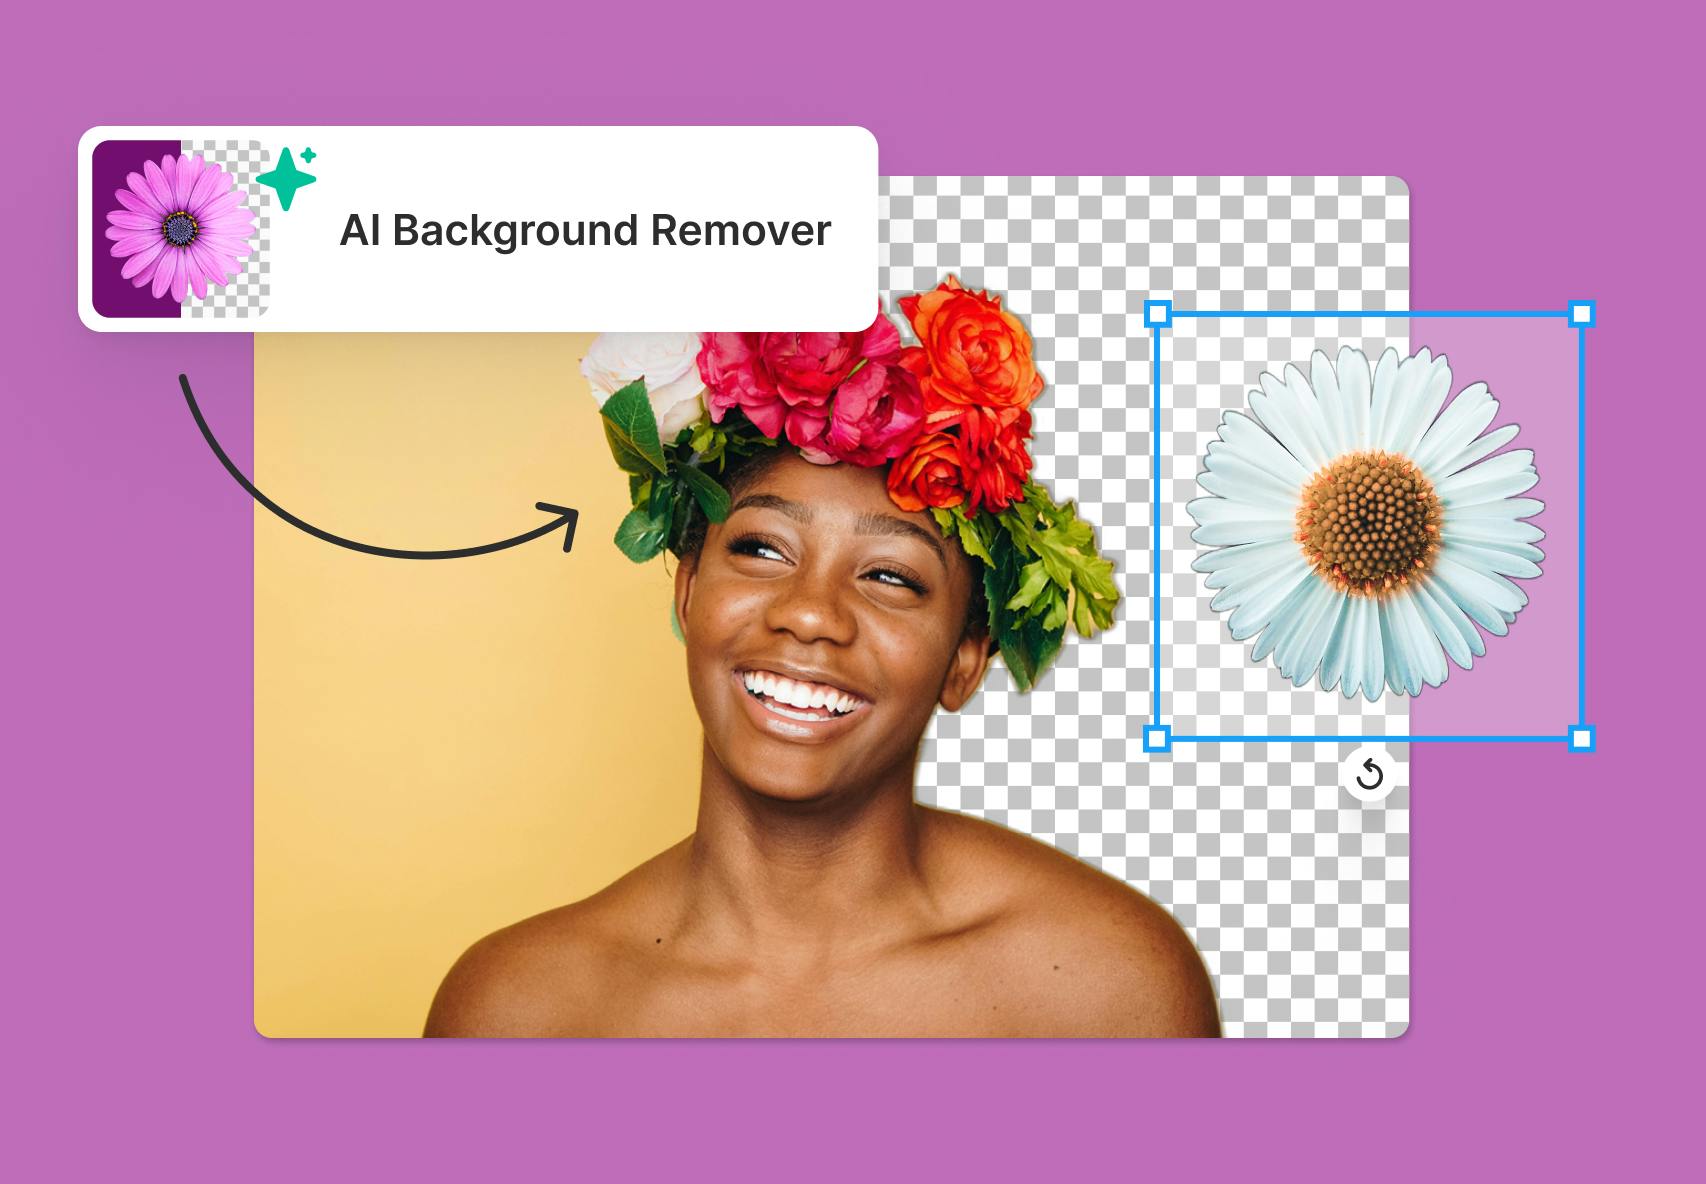 AI Background Removal Tool là một trong những công cụ hỗ trợ loại bỏ phông nền đáng tin cậy nhất hiện nay. Với sự ứng dụng của trí tuệ nhân tạo, công cụ này có thể tự động phát hiện và loại bỏ nền trong hình ảnh chỉ với một cú nhấp chuột. Đây thực sự là công cụ không thể thiếu cho các nhà thiết kế và những người yêu thích chỉnh sửa hình ảnh.